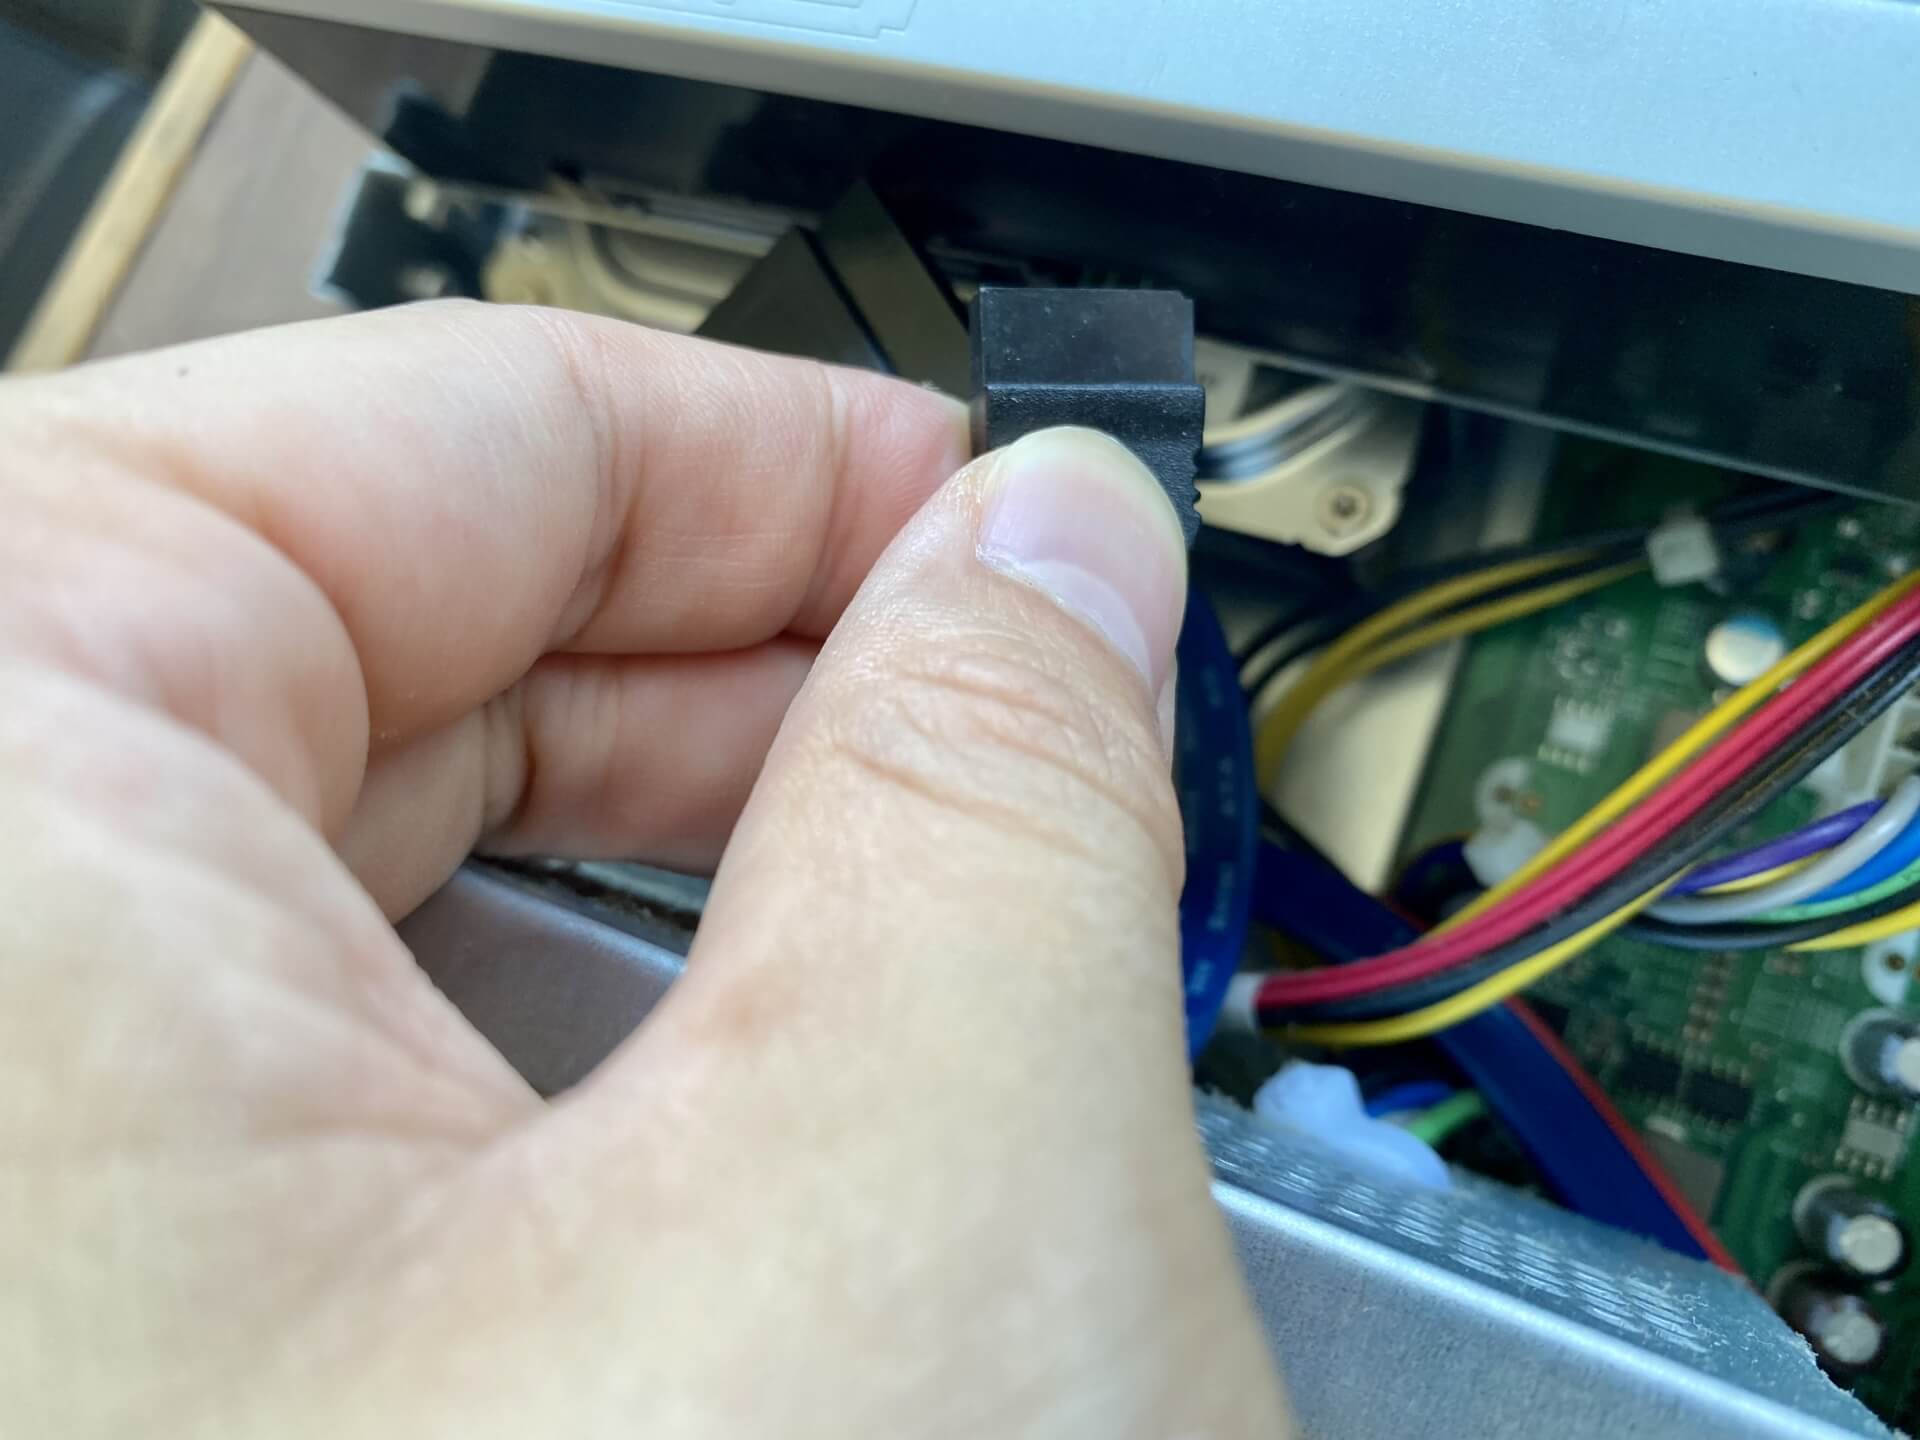 パソコンの修理をしている手元の画像